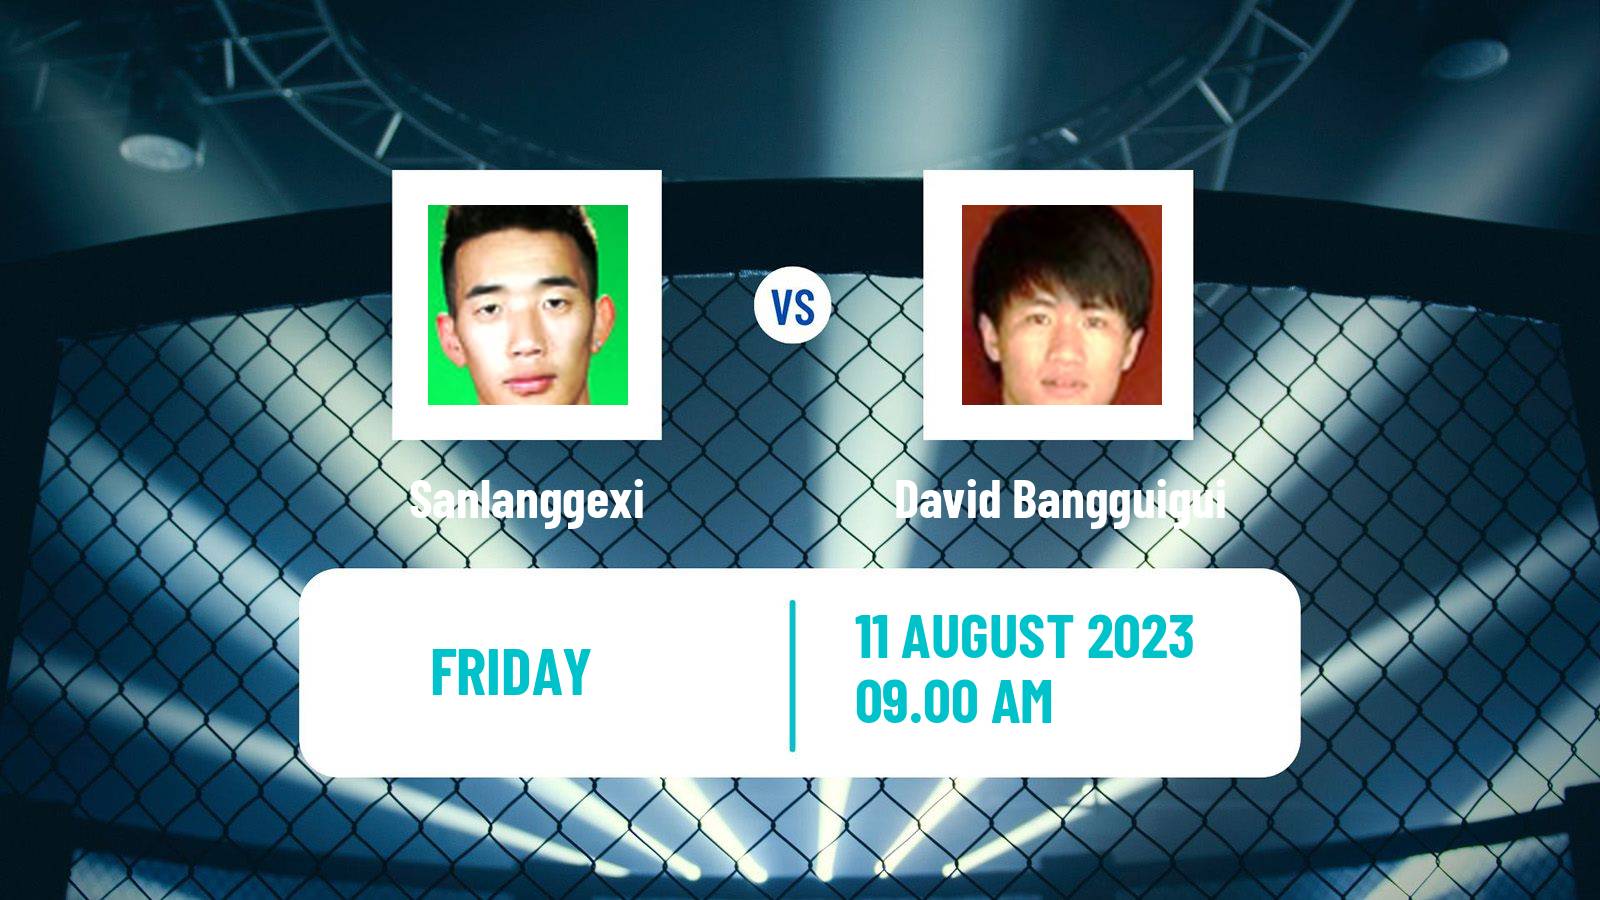 MMA Strawweight One Championship Men Sanlanggexi - David Bangguigui